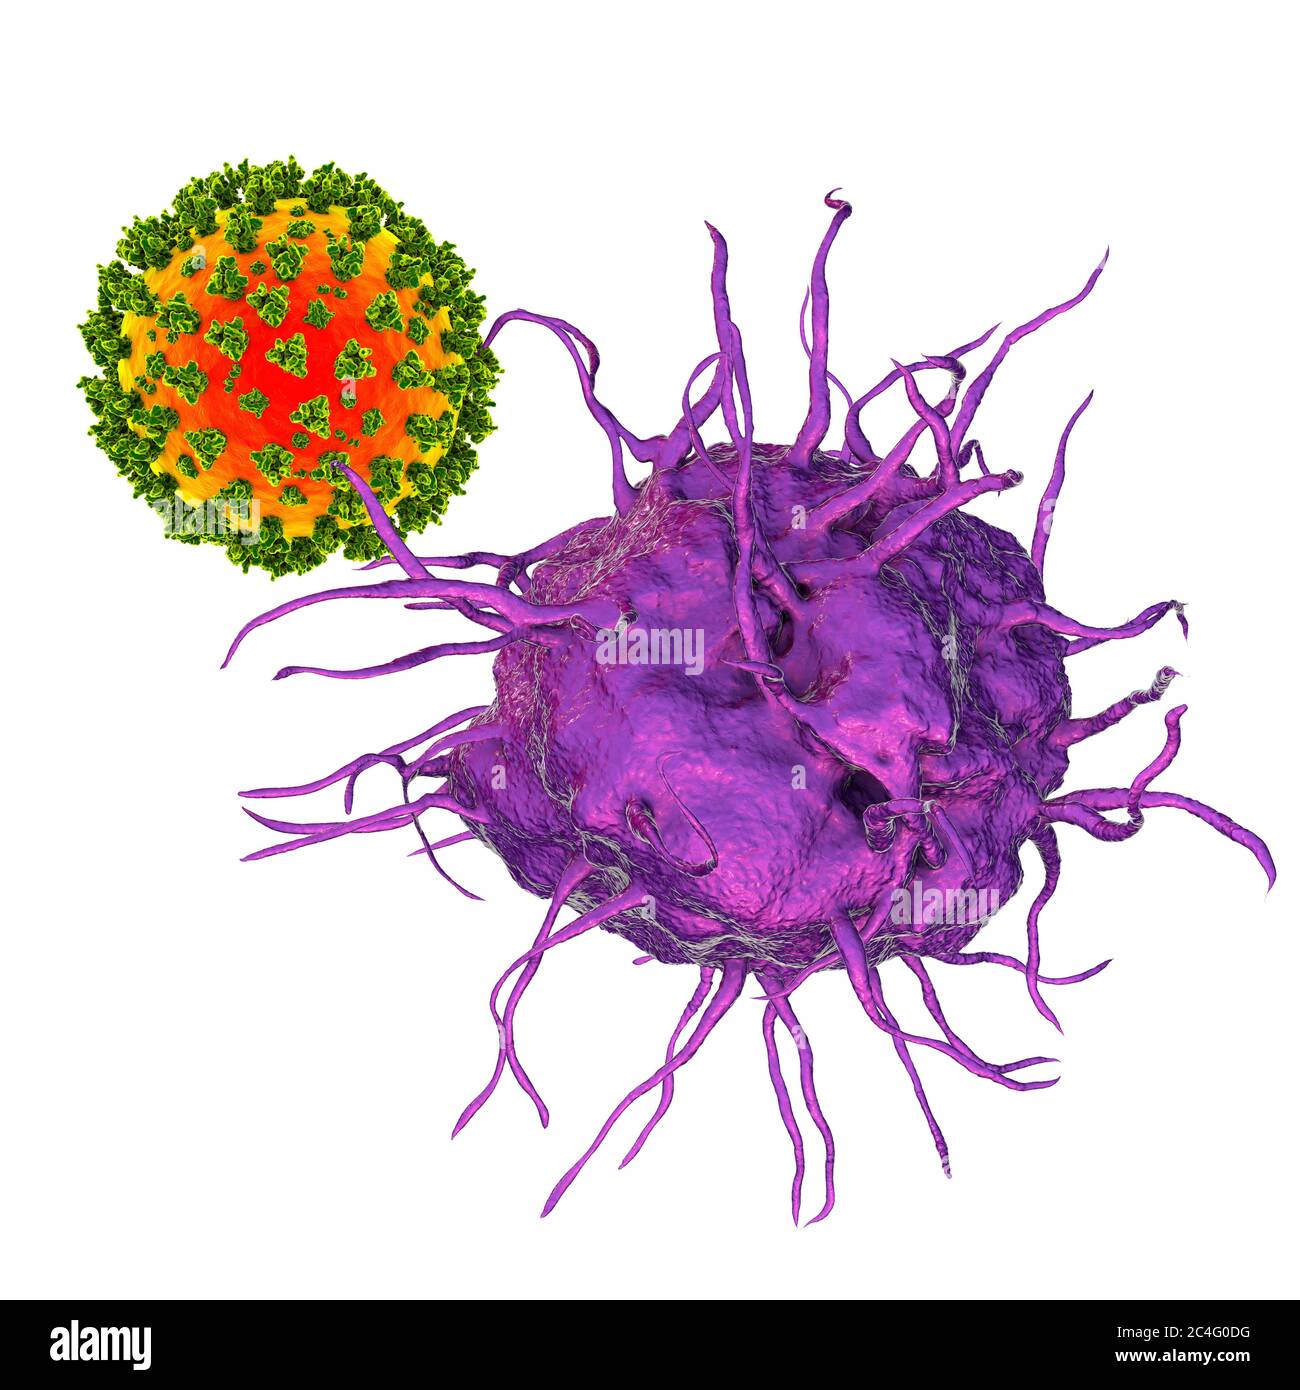 Interaktion zwischen Virus und dendritischer Zelle, Computerdarstellung. Dendritische Zellen spielen eine entscheidende Rolle bei der Einleitung von Immunantworten gegen Viren. Sie erkennen ankommende Viren und präsentieren ihre Antigene T-Zellen. Stockfoto